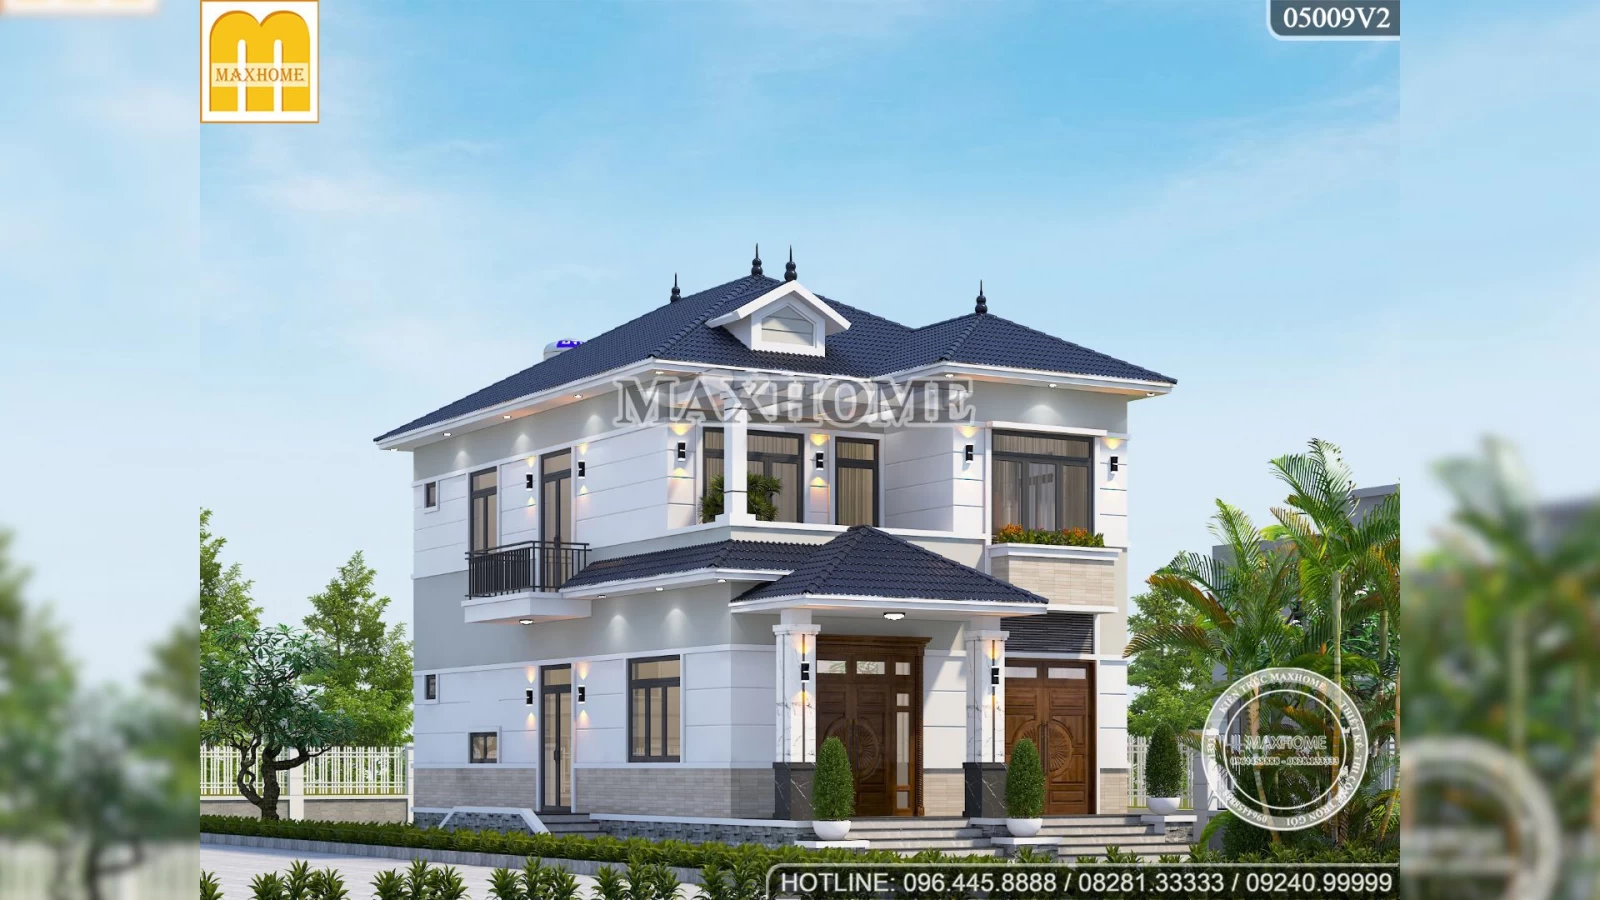 BÁN BẢN VẼ nhà 2 tầng mái Nhật 4 phòng ngủ siêu đẹp, tiện nghi tại Bình Phước | MH01497